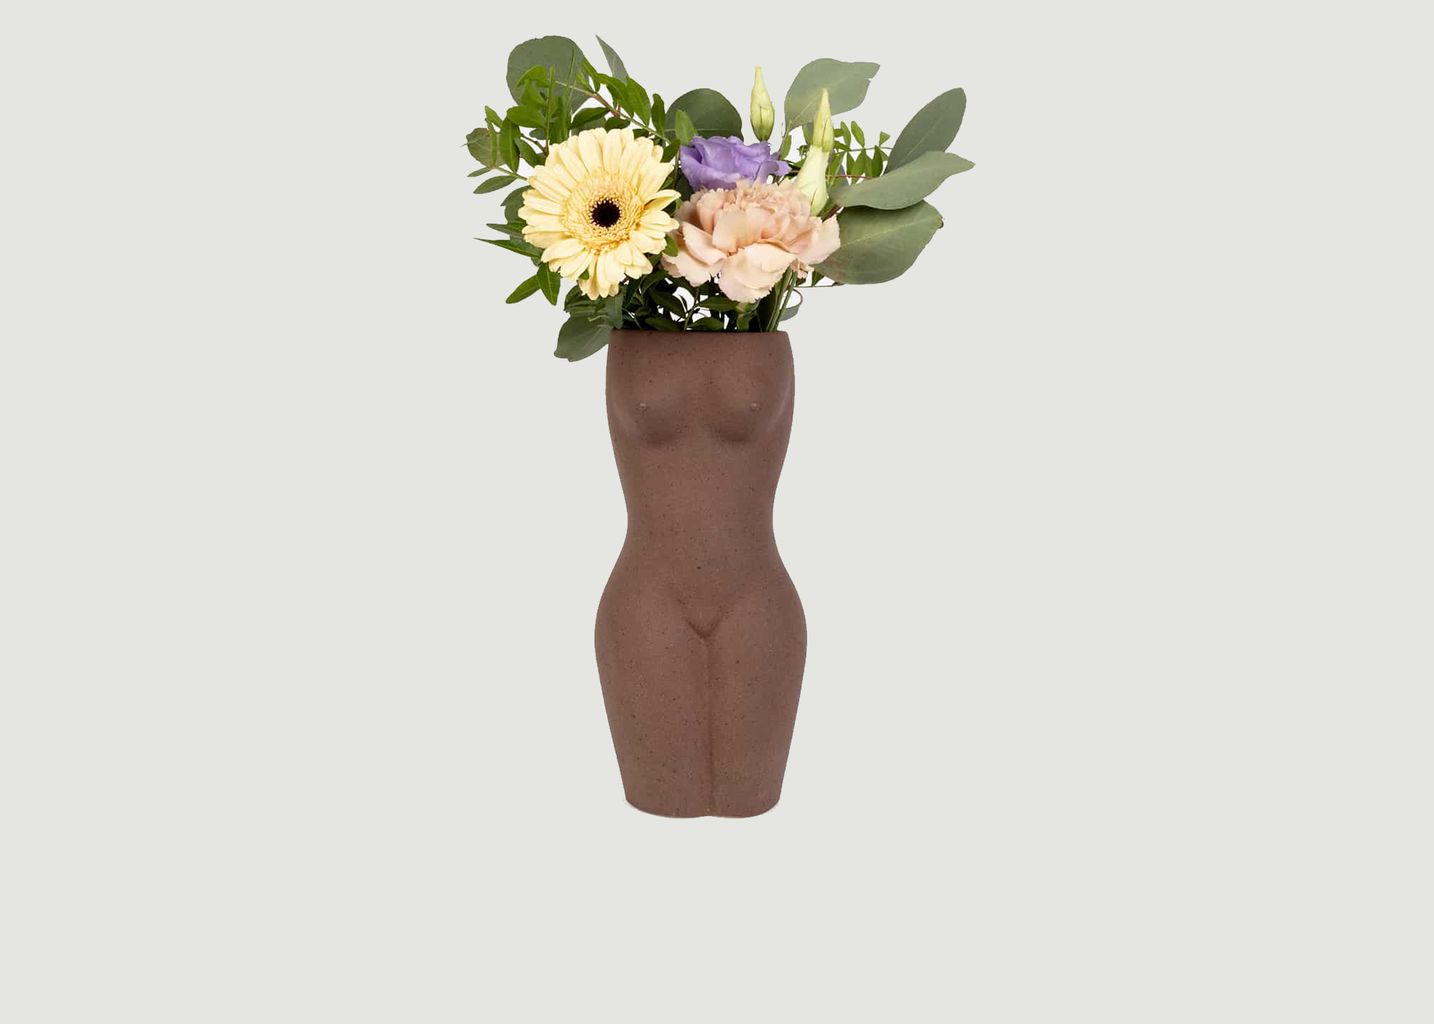 Large ceramic vase - Doiy